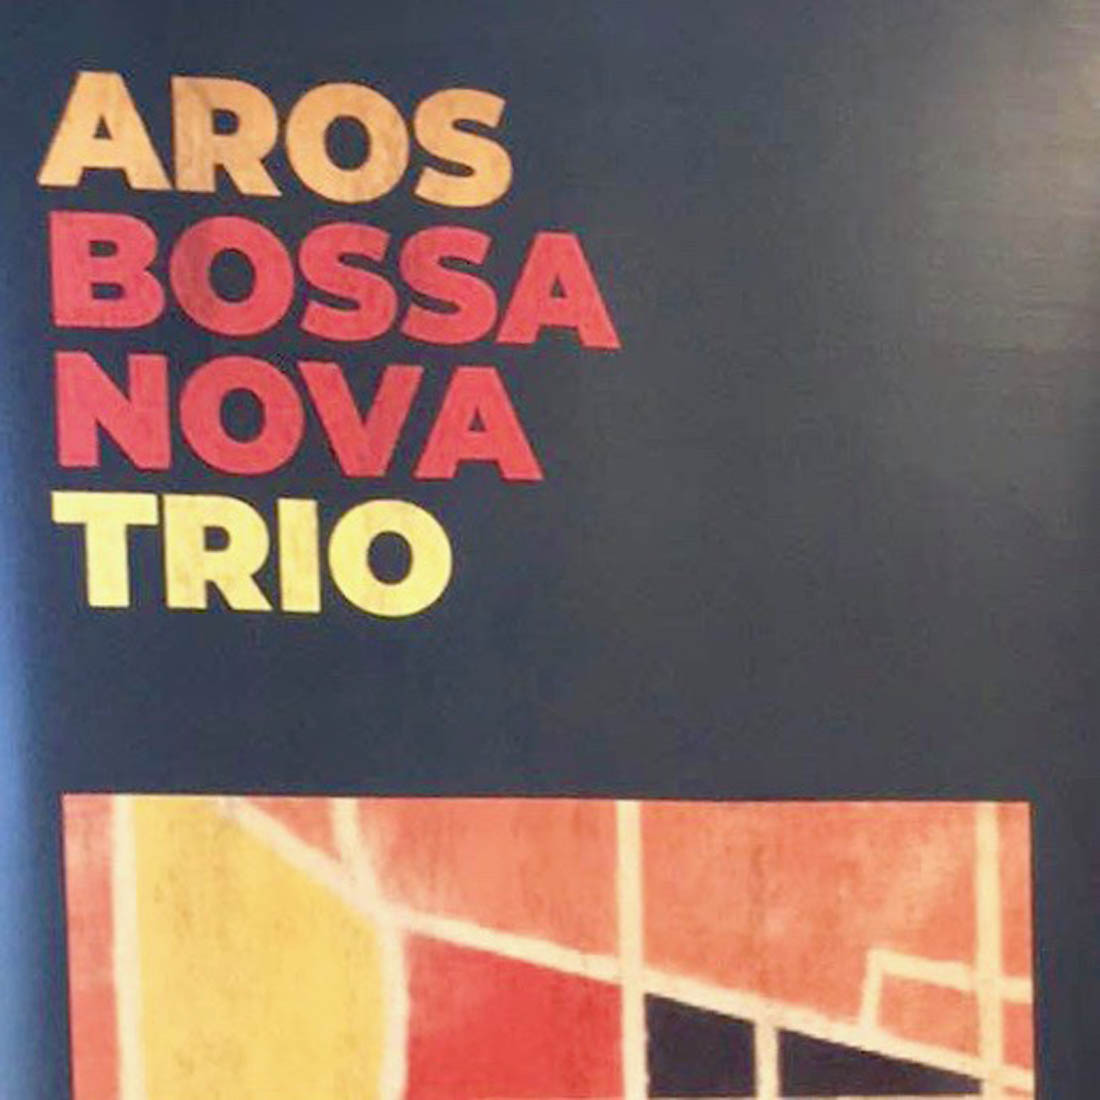 Aros Bossa Nova Trio - Photo: Aros Bossa Nova Trio